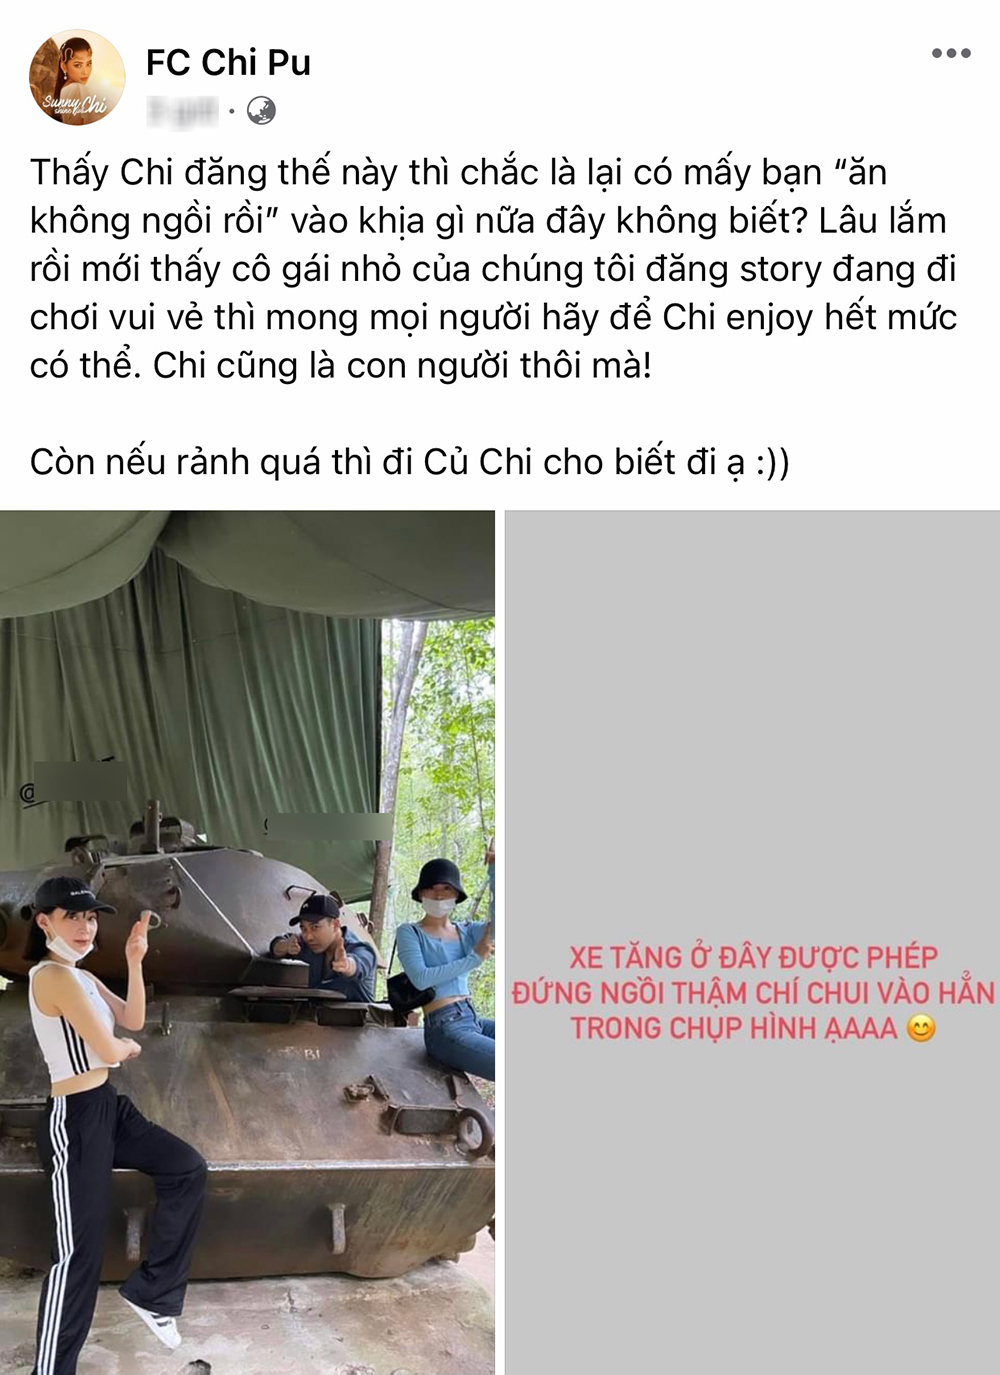  
Fan cũng đăng hẳn một bài bênh vực Chi Pu, nghi ngờ có người cố tình "khịa" nữ ca sĩ vì bức ảnh chụp cùng xe tăng. (Ảnh: Chụp màn hình)